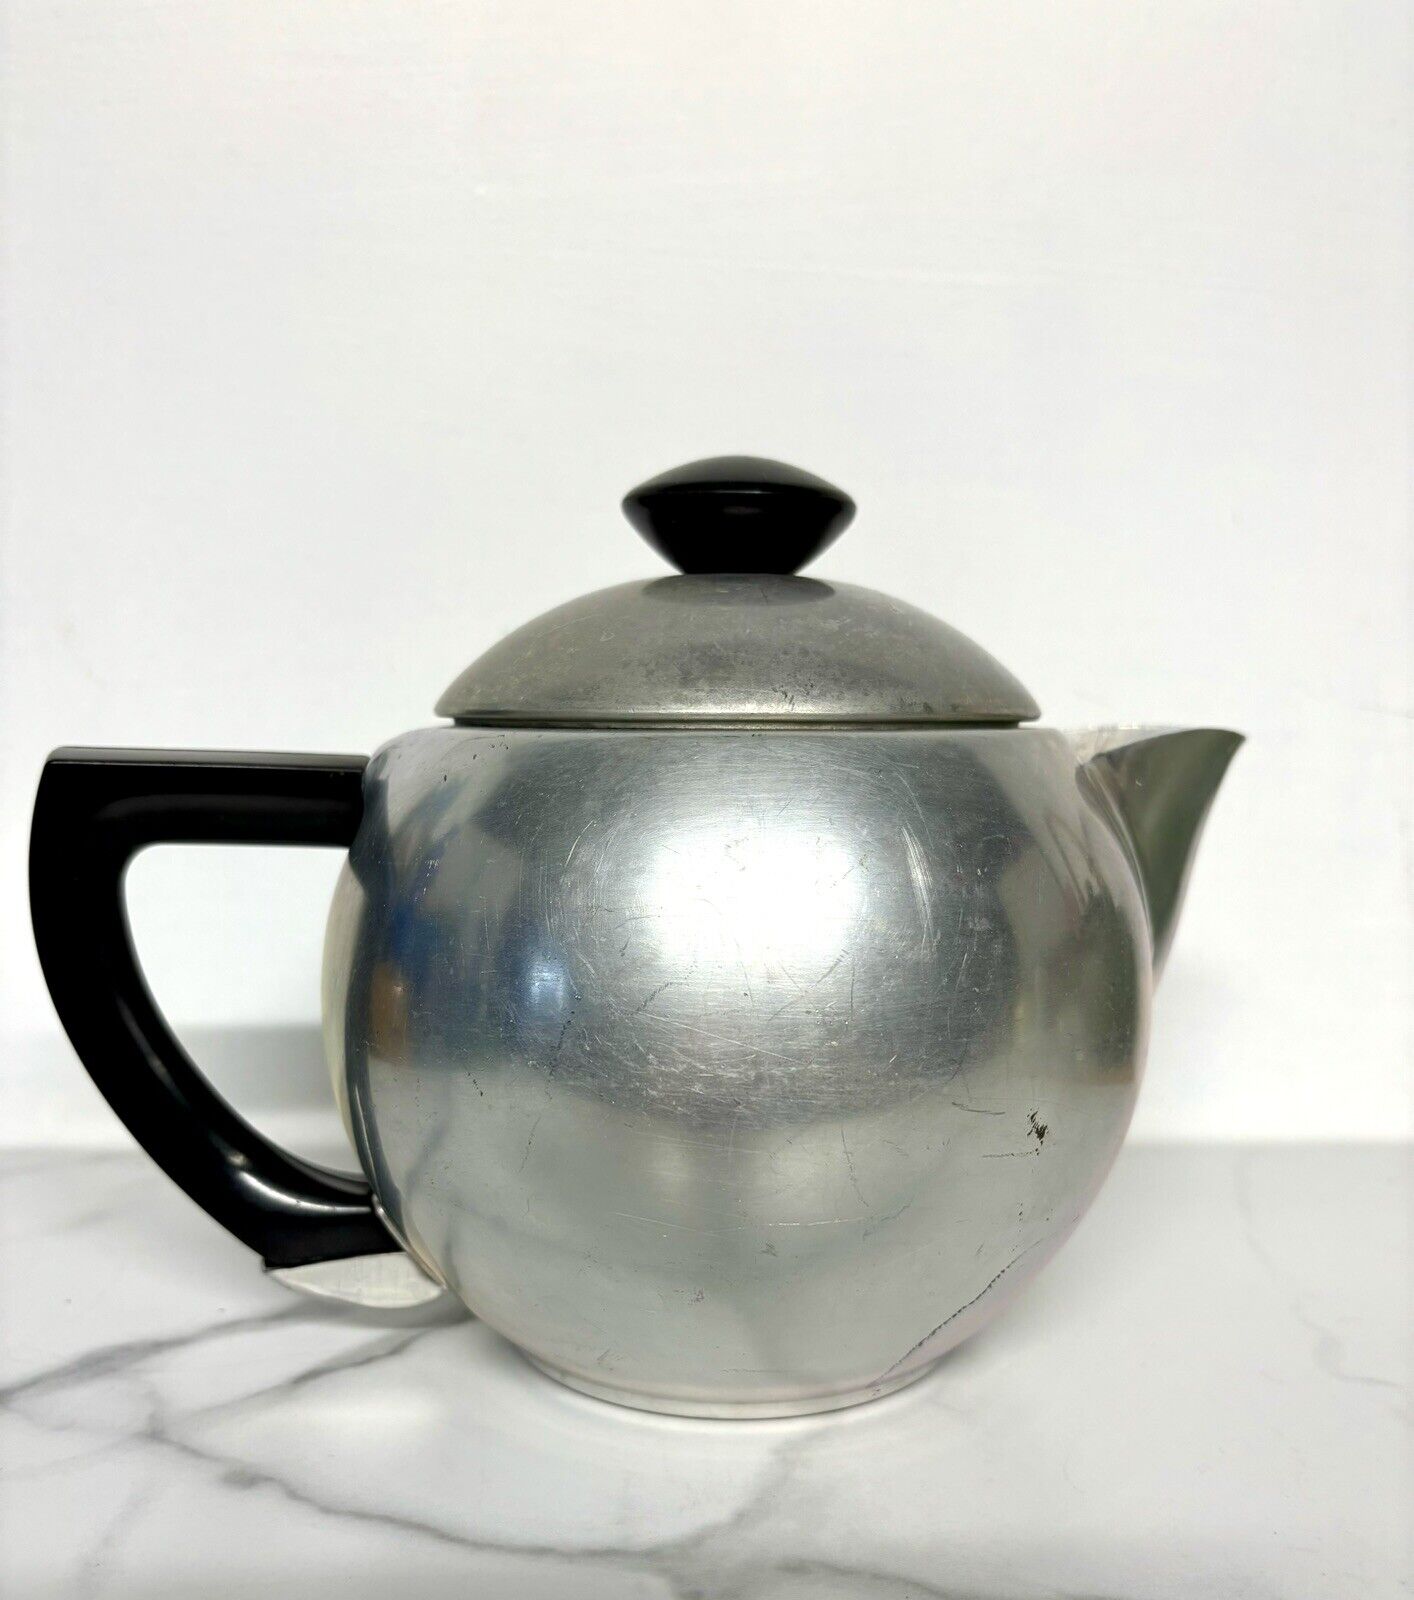 Vintage Mirro Aluminum Teapot 1526-M, Aluminum,1 1/2 qt Made USA Mid-Century MCM